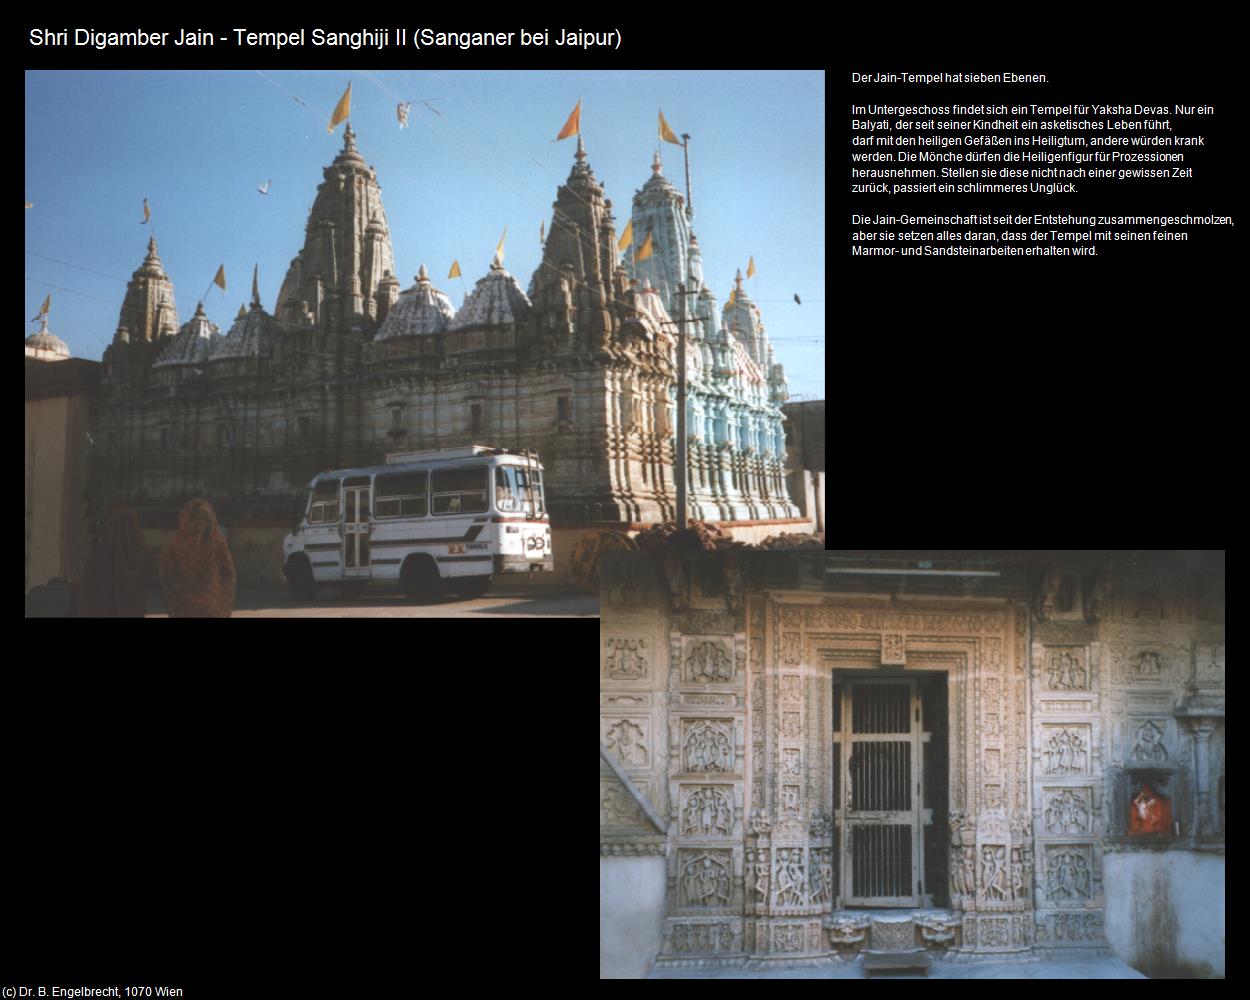 Shri Digamber Tempel II (Sanganer bei Jaipur) in Rajasthan - das Land der Könige